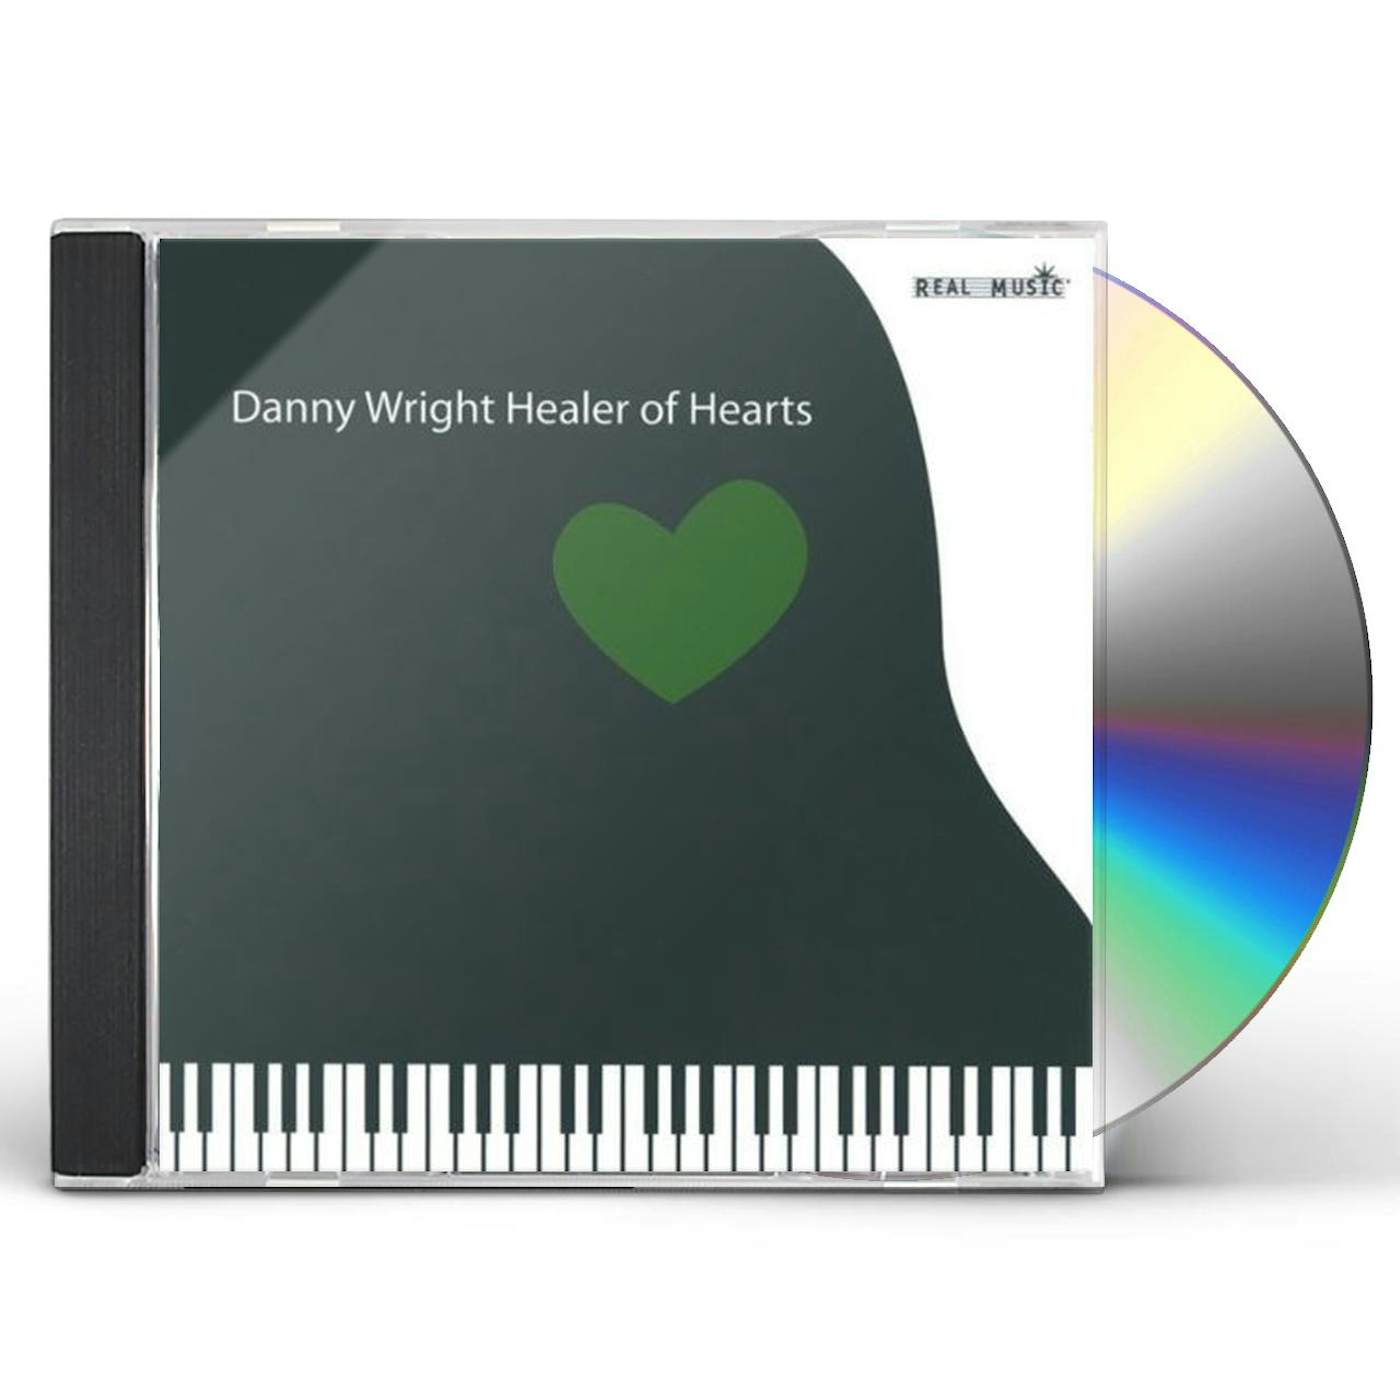 DANNY WRIGHT HEALER OF HEARTS CD